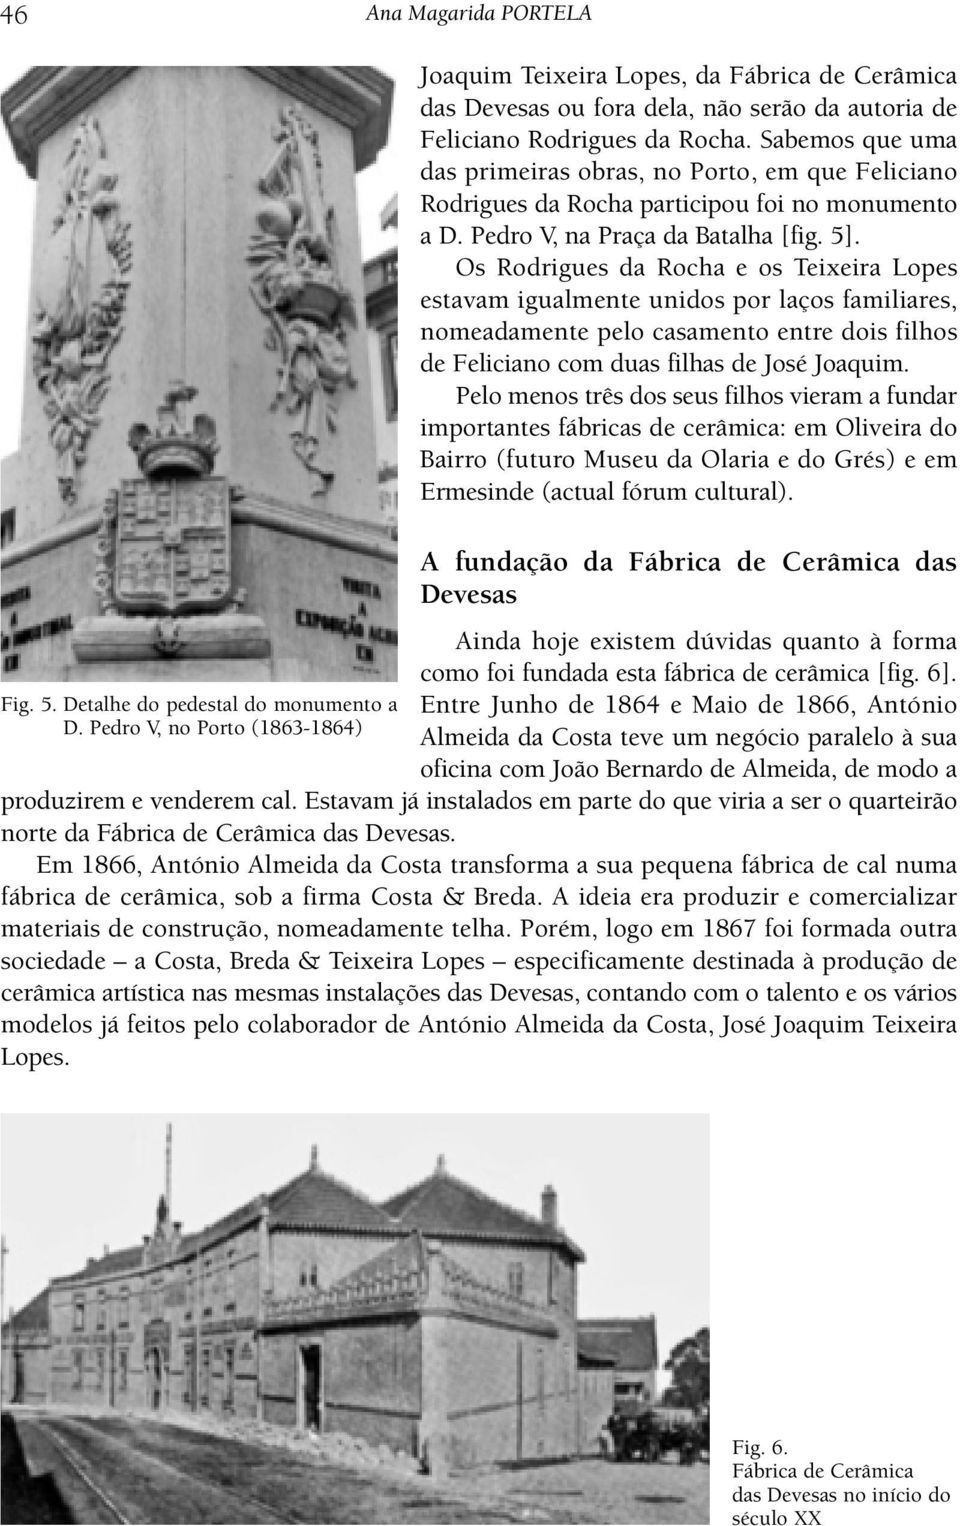 Sabemos que uma das primeiras obras, no Porto, em que Feliciano Rodrigues da Rocha participou foi no monumento a D. Pedro V, na Praça da Batalha [fig. 5].